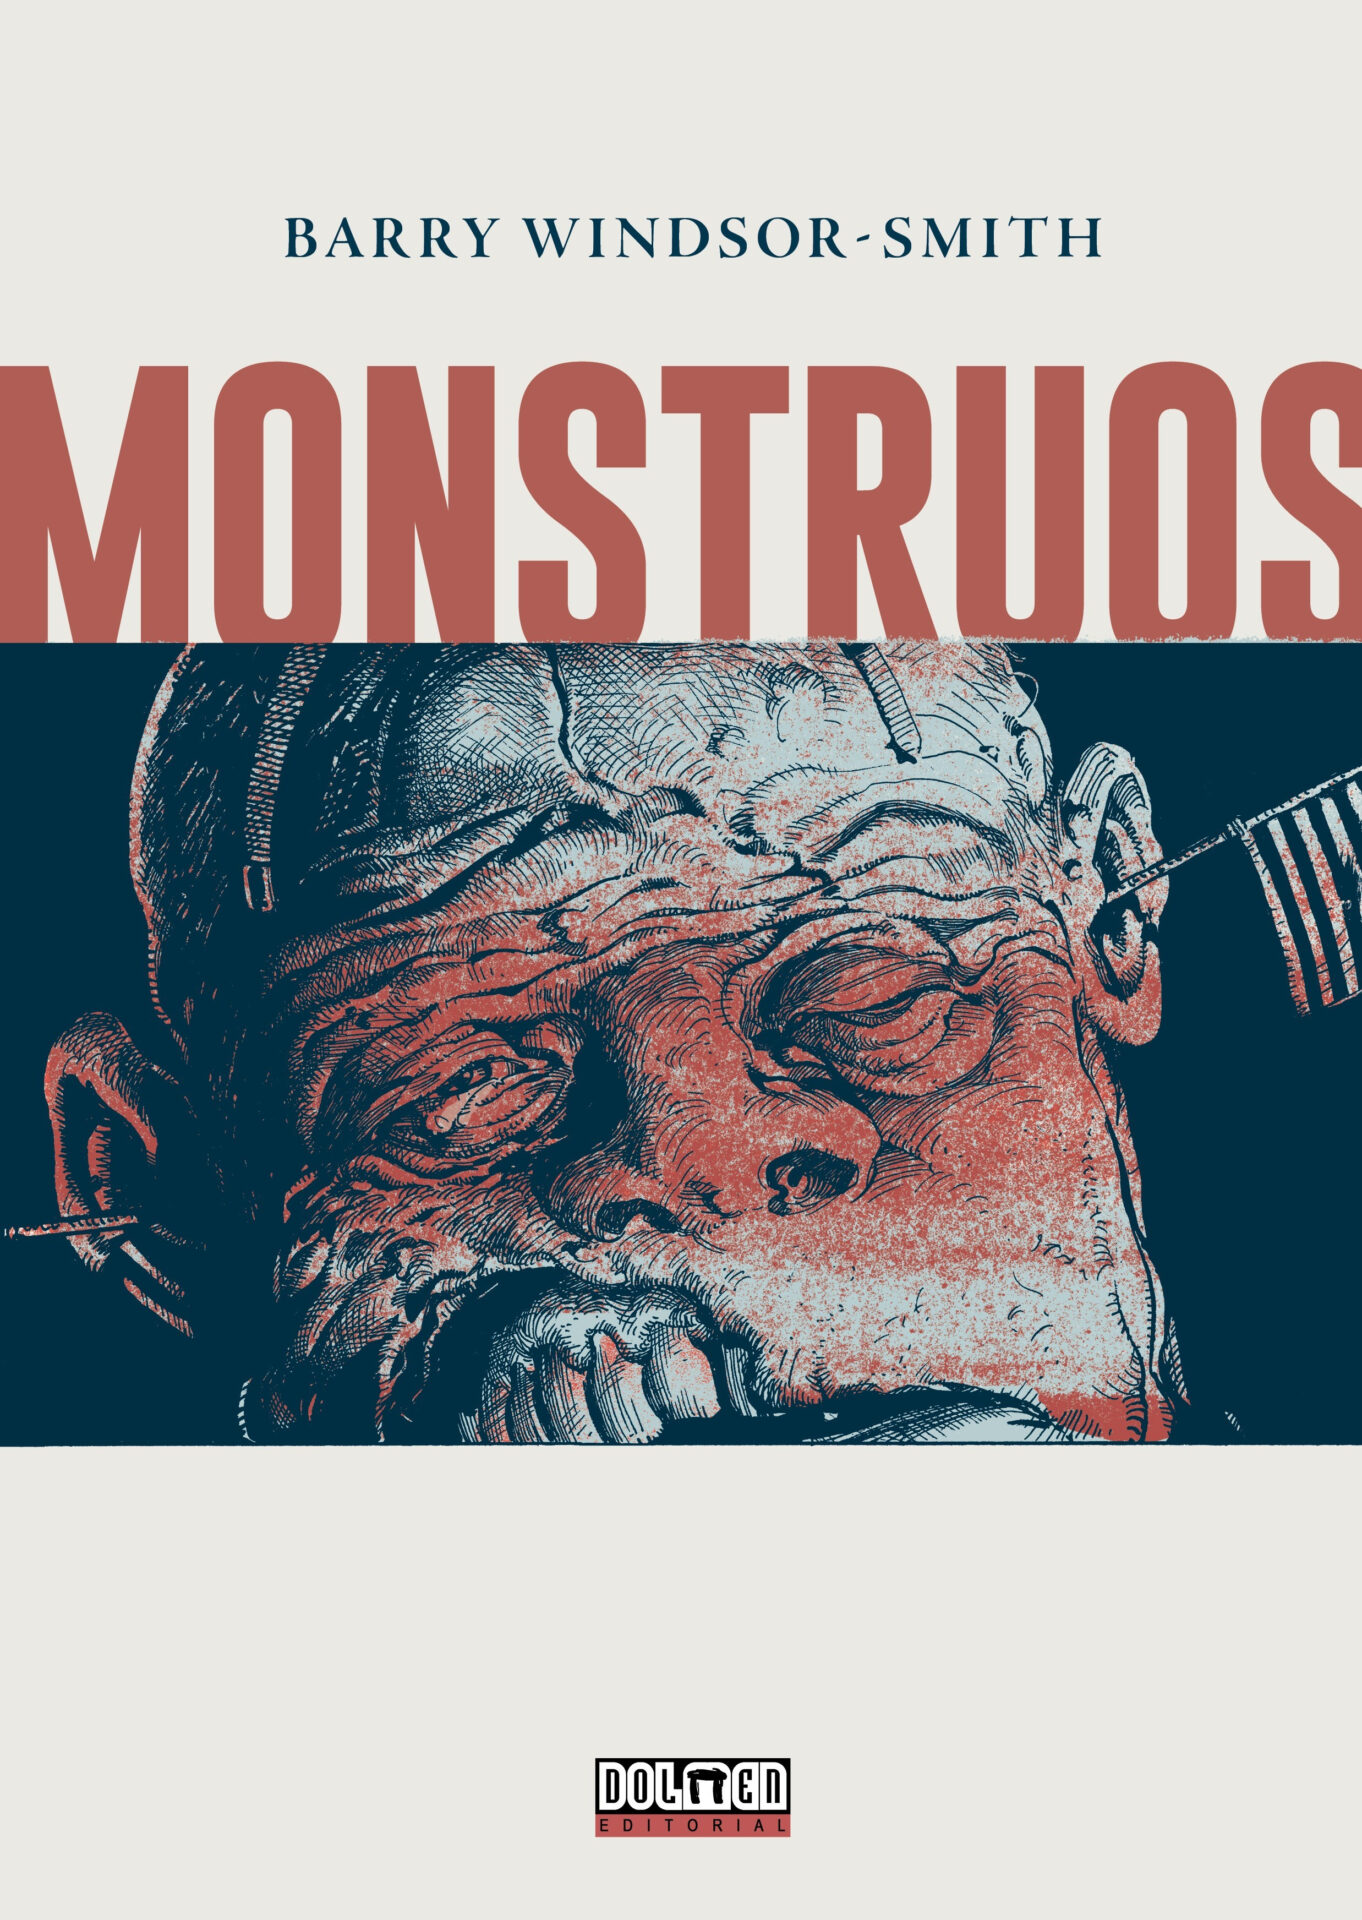 Estreno mundial de la obra más esperada de BARRY WINDSOR-SMITH: Monstruos